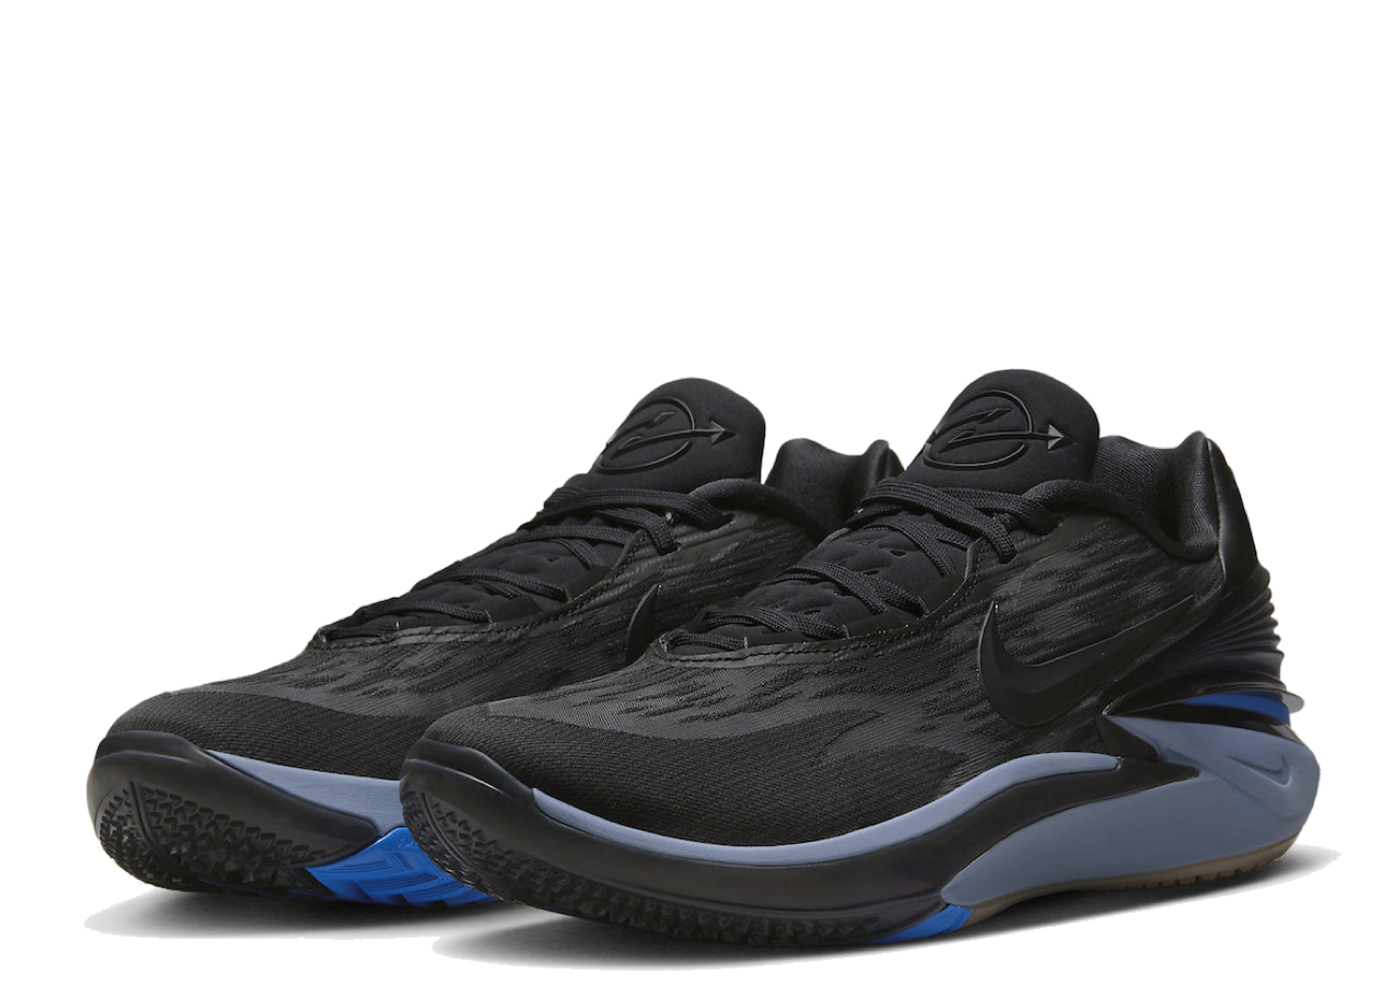 Nike Zoom GT Cut 2 Black Racer Blue | Kick Avenue